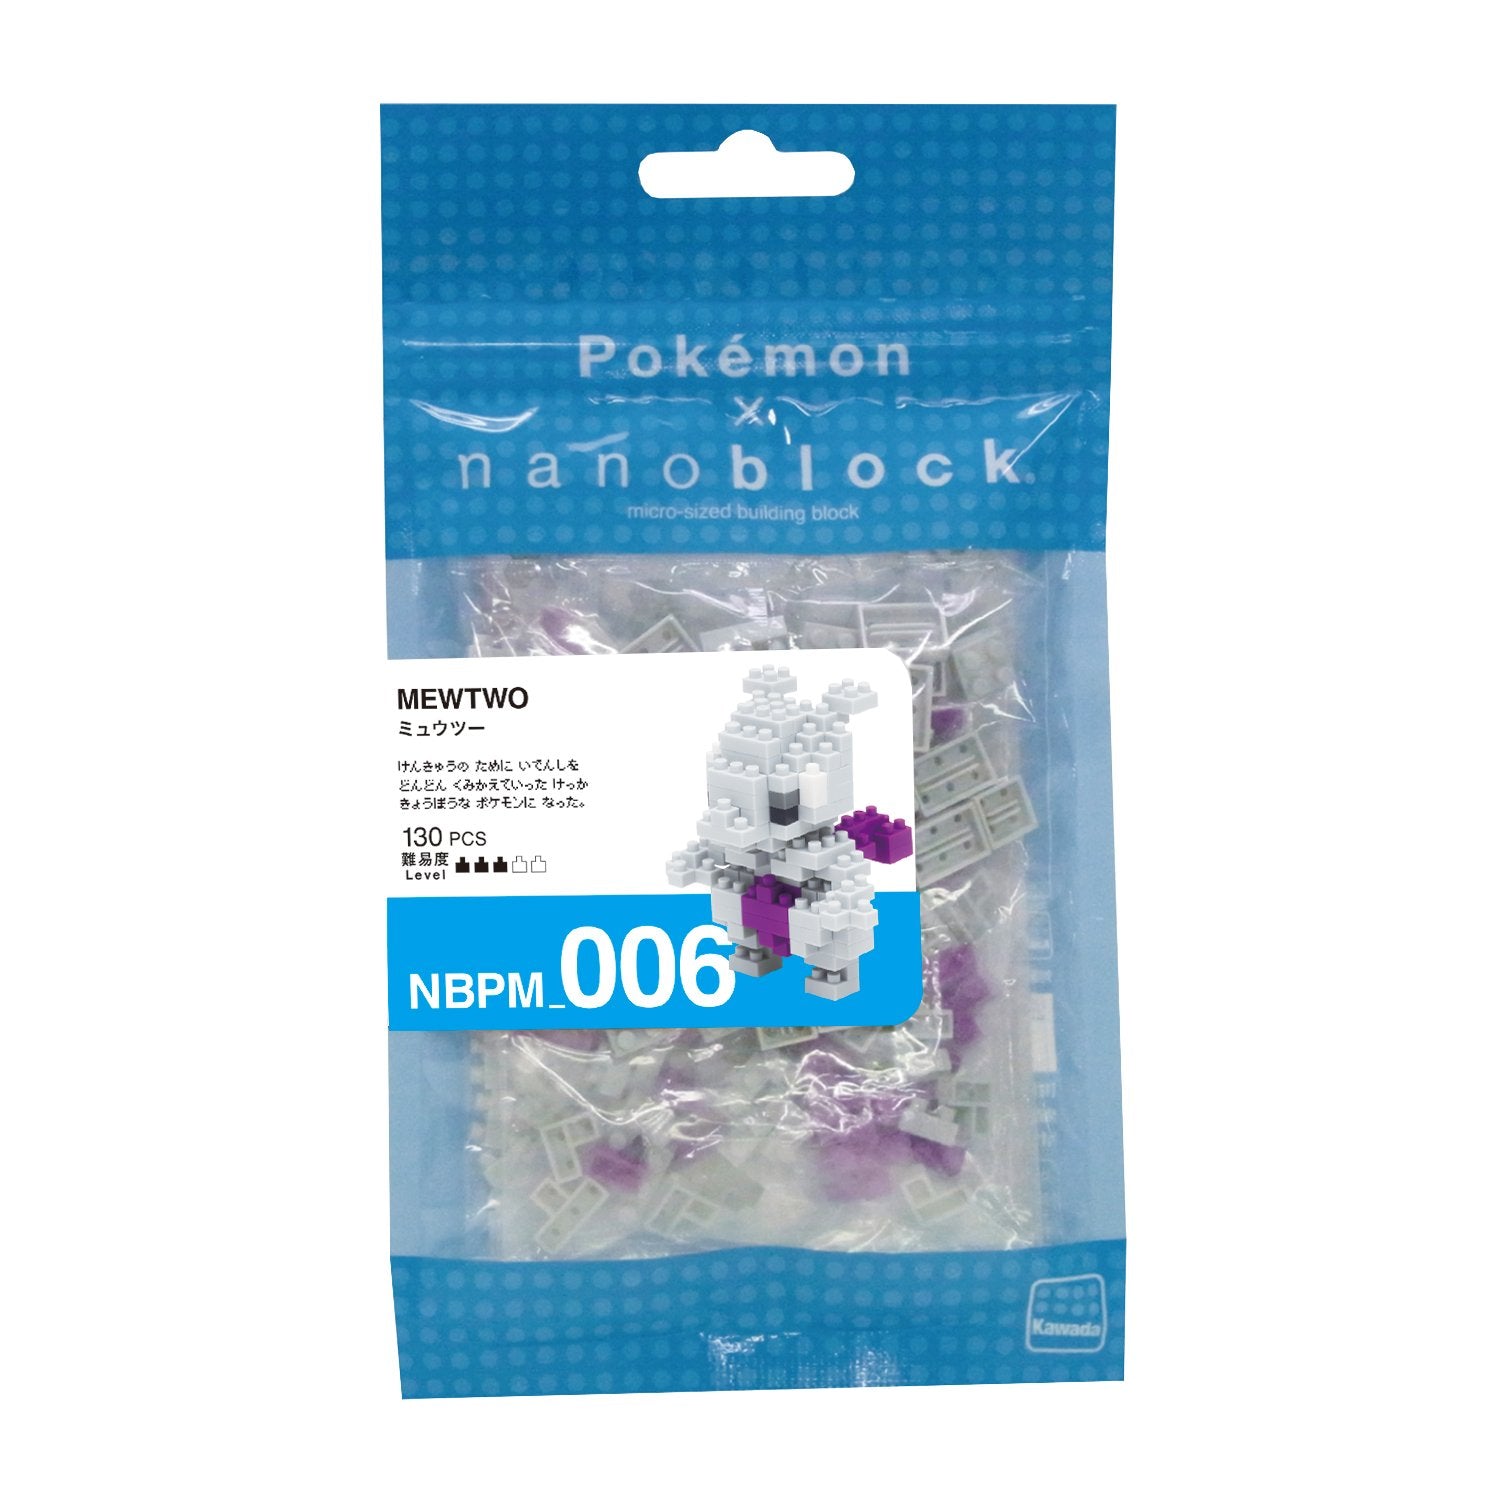 nanoblock Pokemon Mewtwo Building Kit, White